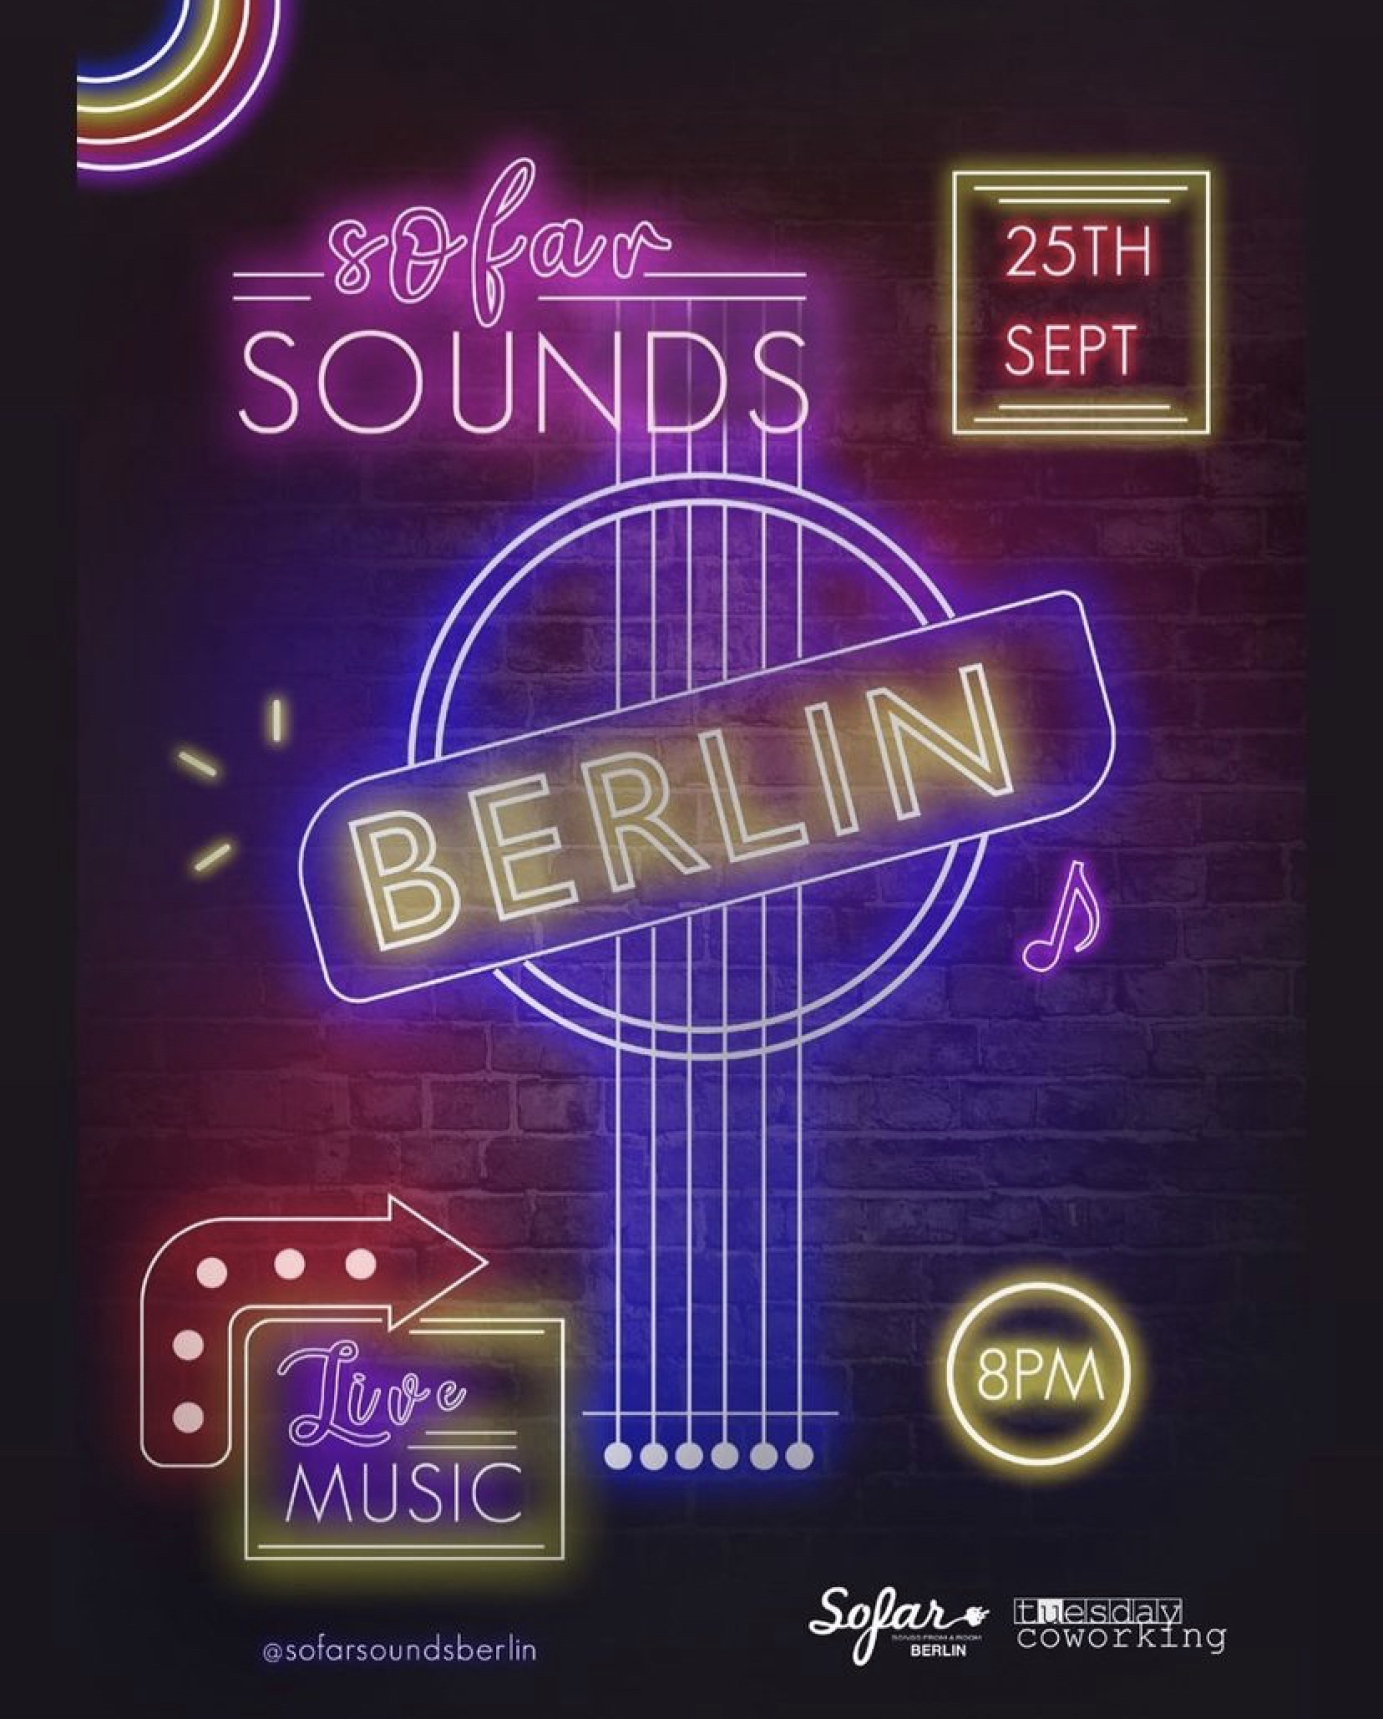 Event poster for Sofar Sounds